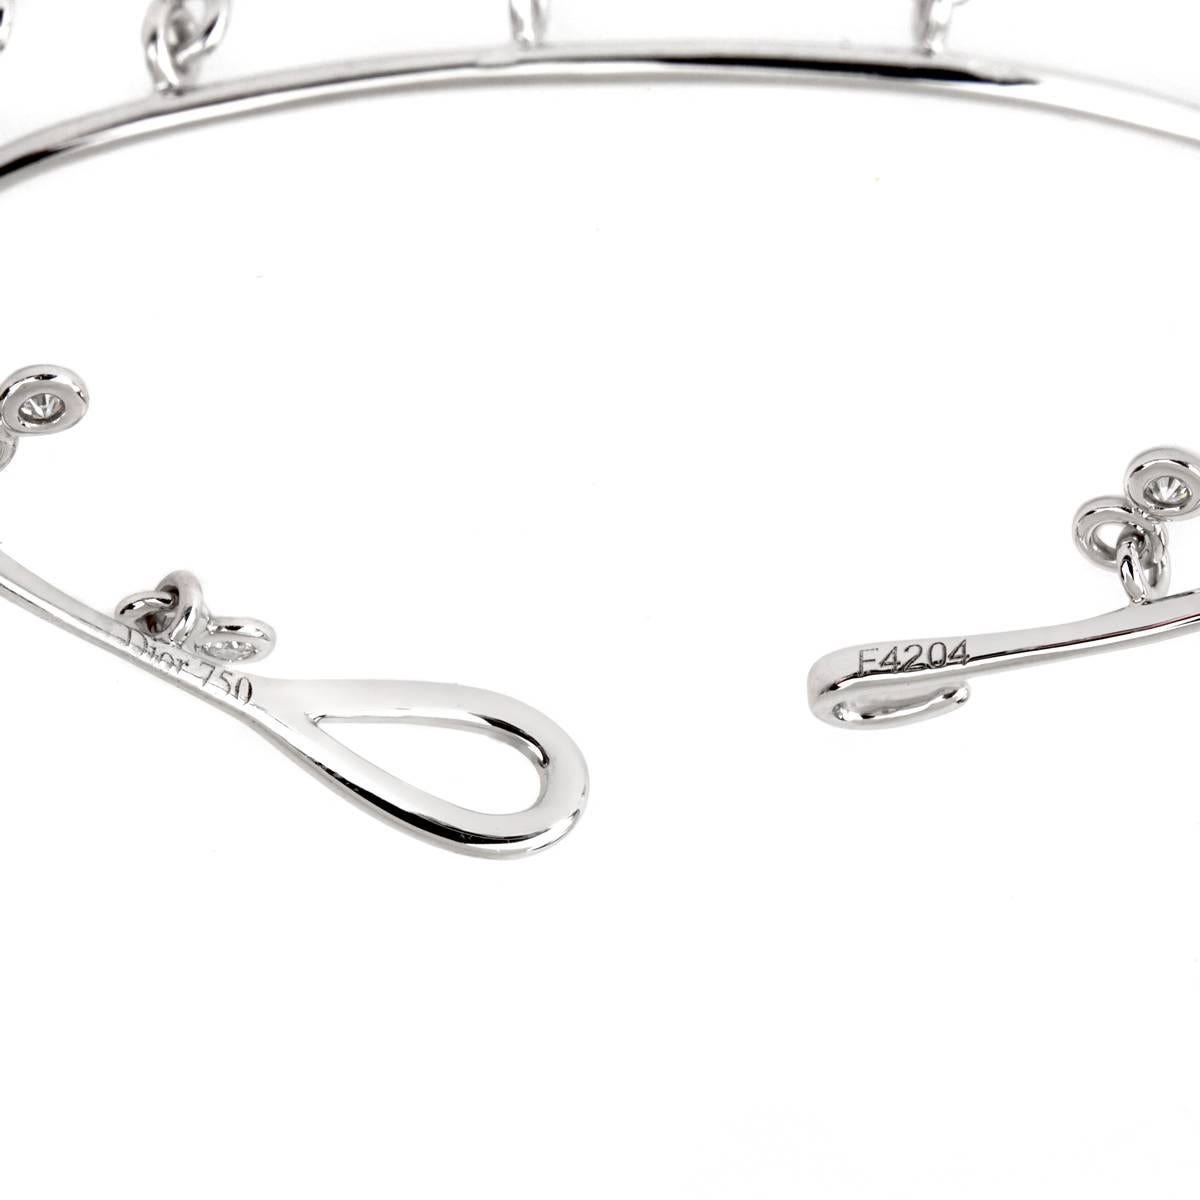 Un bracelet chic de Dior avec 12 des plus beaux diamants ronds de taille brillant de Dior sertis dans des biseaux flottant librement dans l'or blanc 18k.

Taille : Moyen 

Sku:858